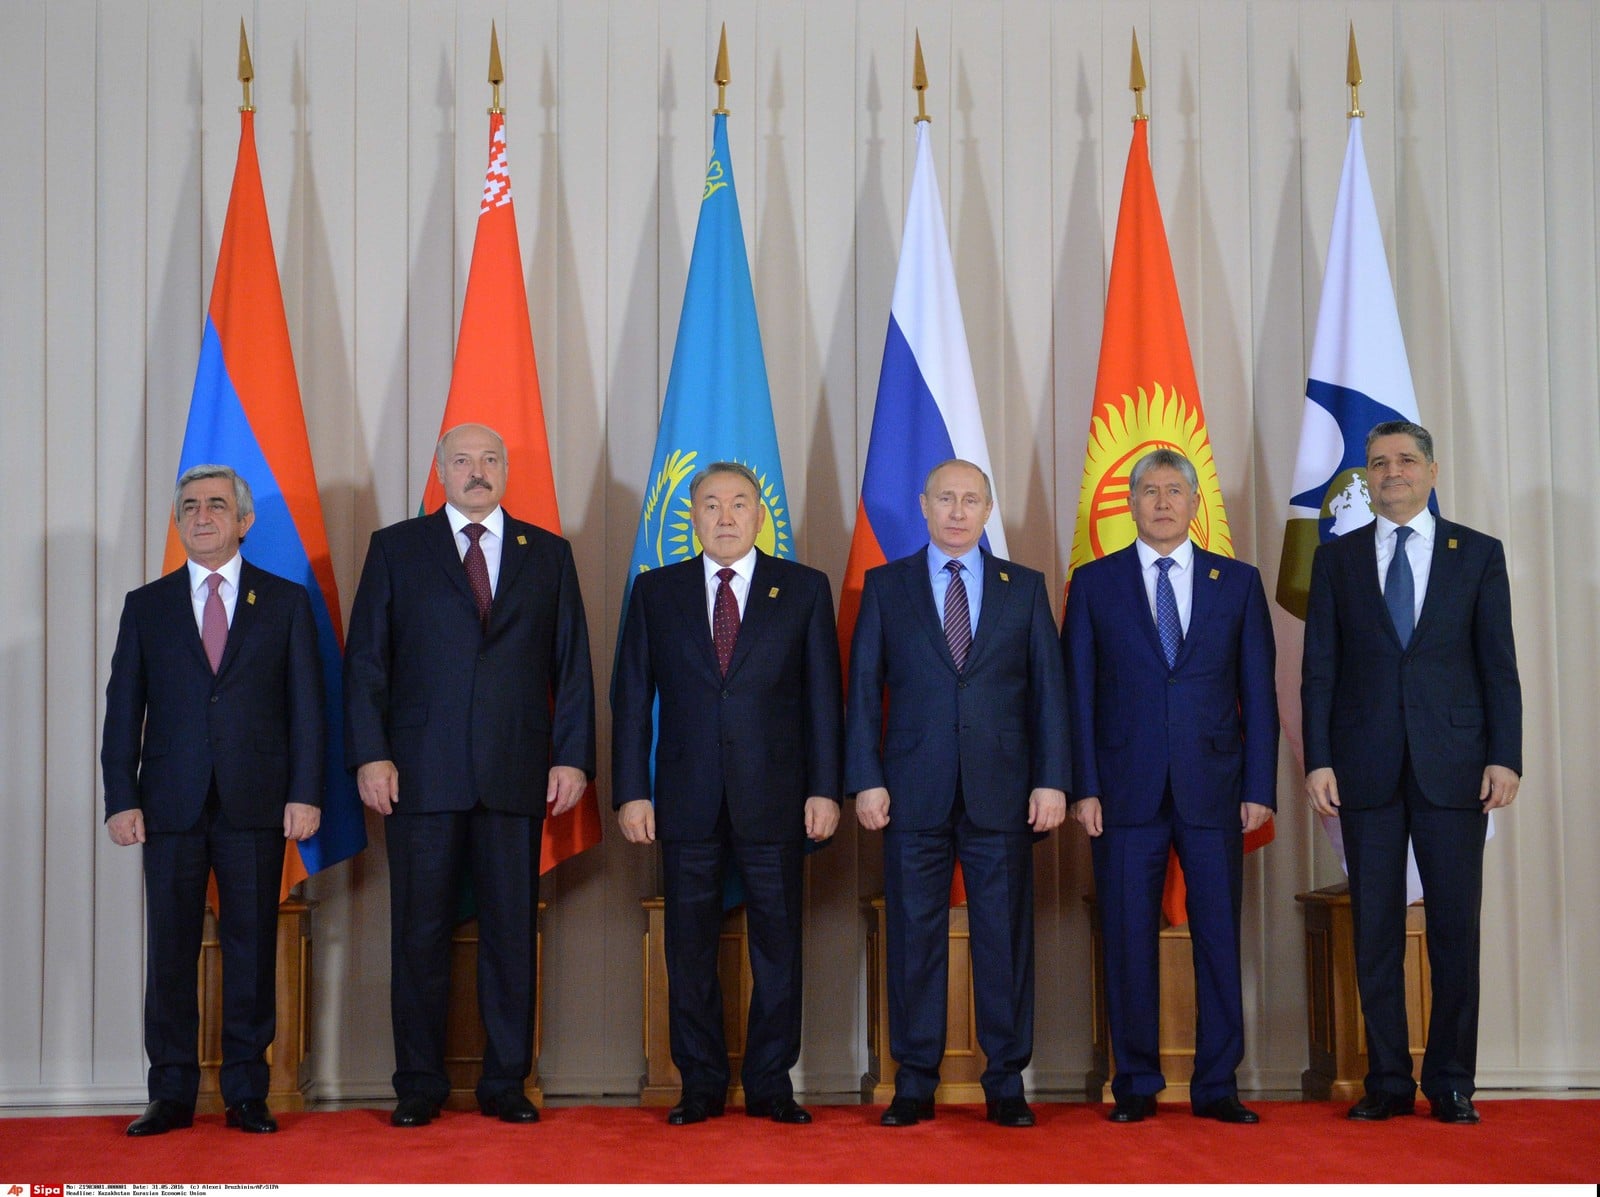 Réunion de l'Union économique eurasiatique le 31 mai 2016 à Astana, Auteurs  : Alexei Druzhinin/AP/SIPA,
Numéro de reportage  : AP21903001_000001.